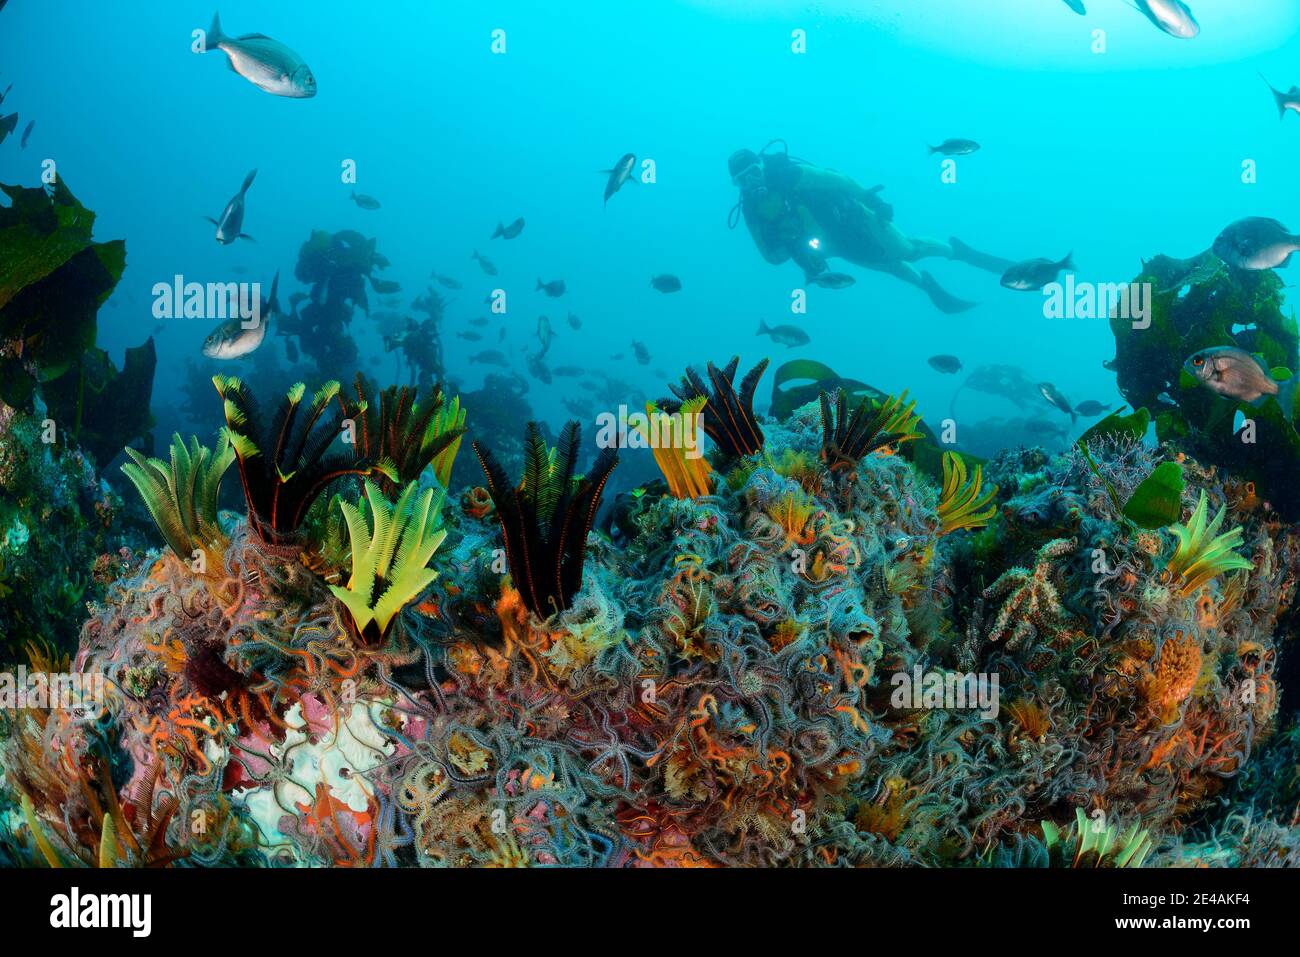 Barriera corallina con stelle fragili, crinoidea (classe) e stelle di piuma Ophiuroidea (classe) e subacquei, False Bay, Simons Town, Sud Africa, Oceano Indiano Foto Stock